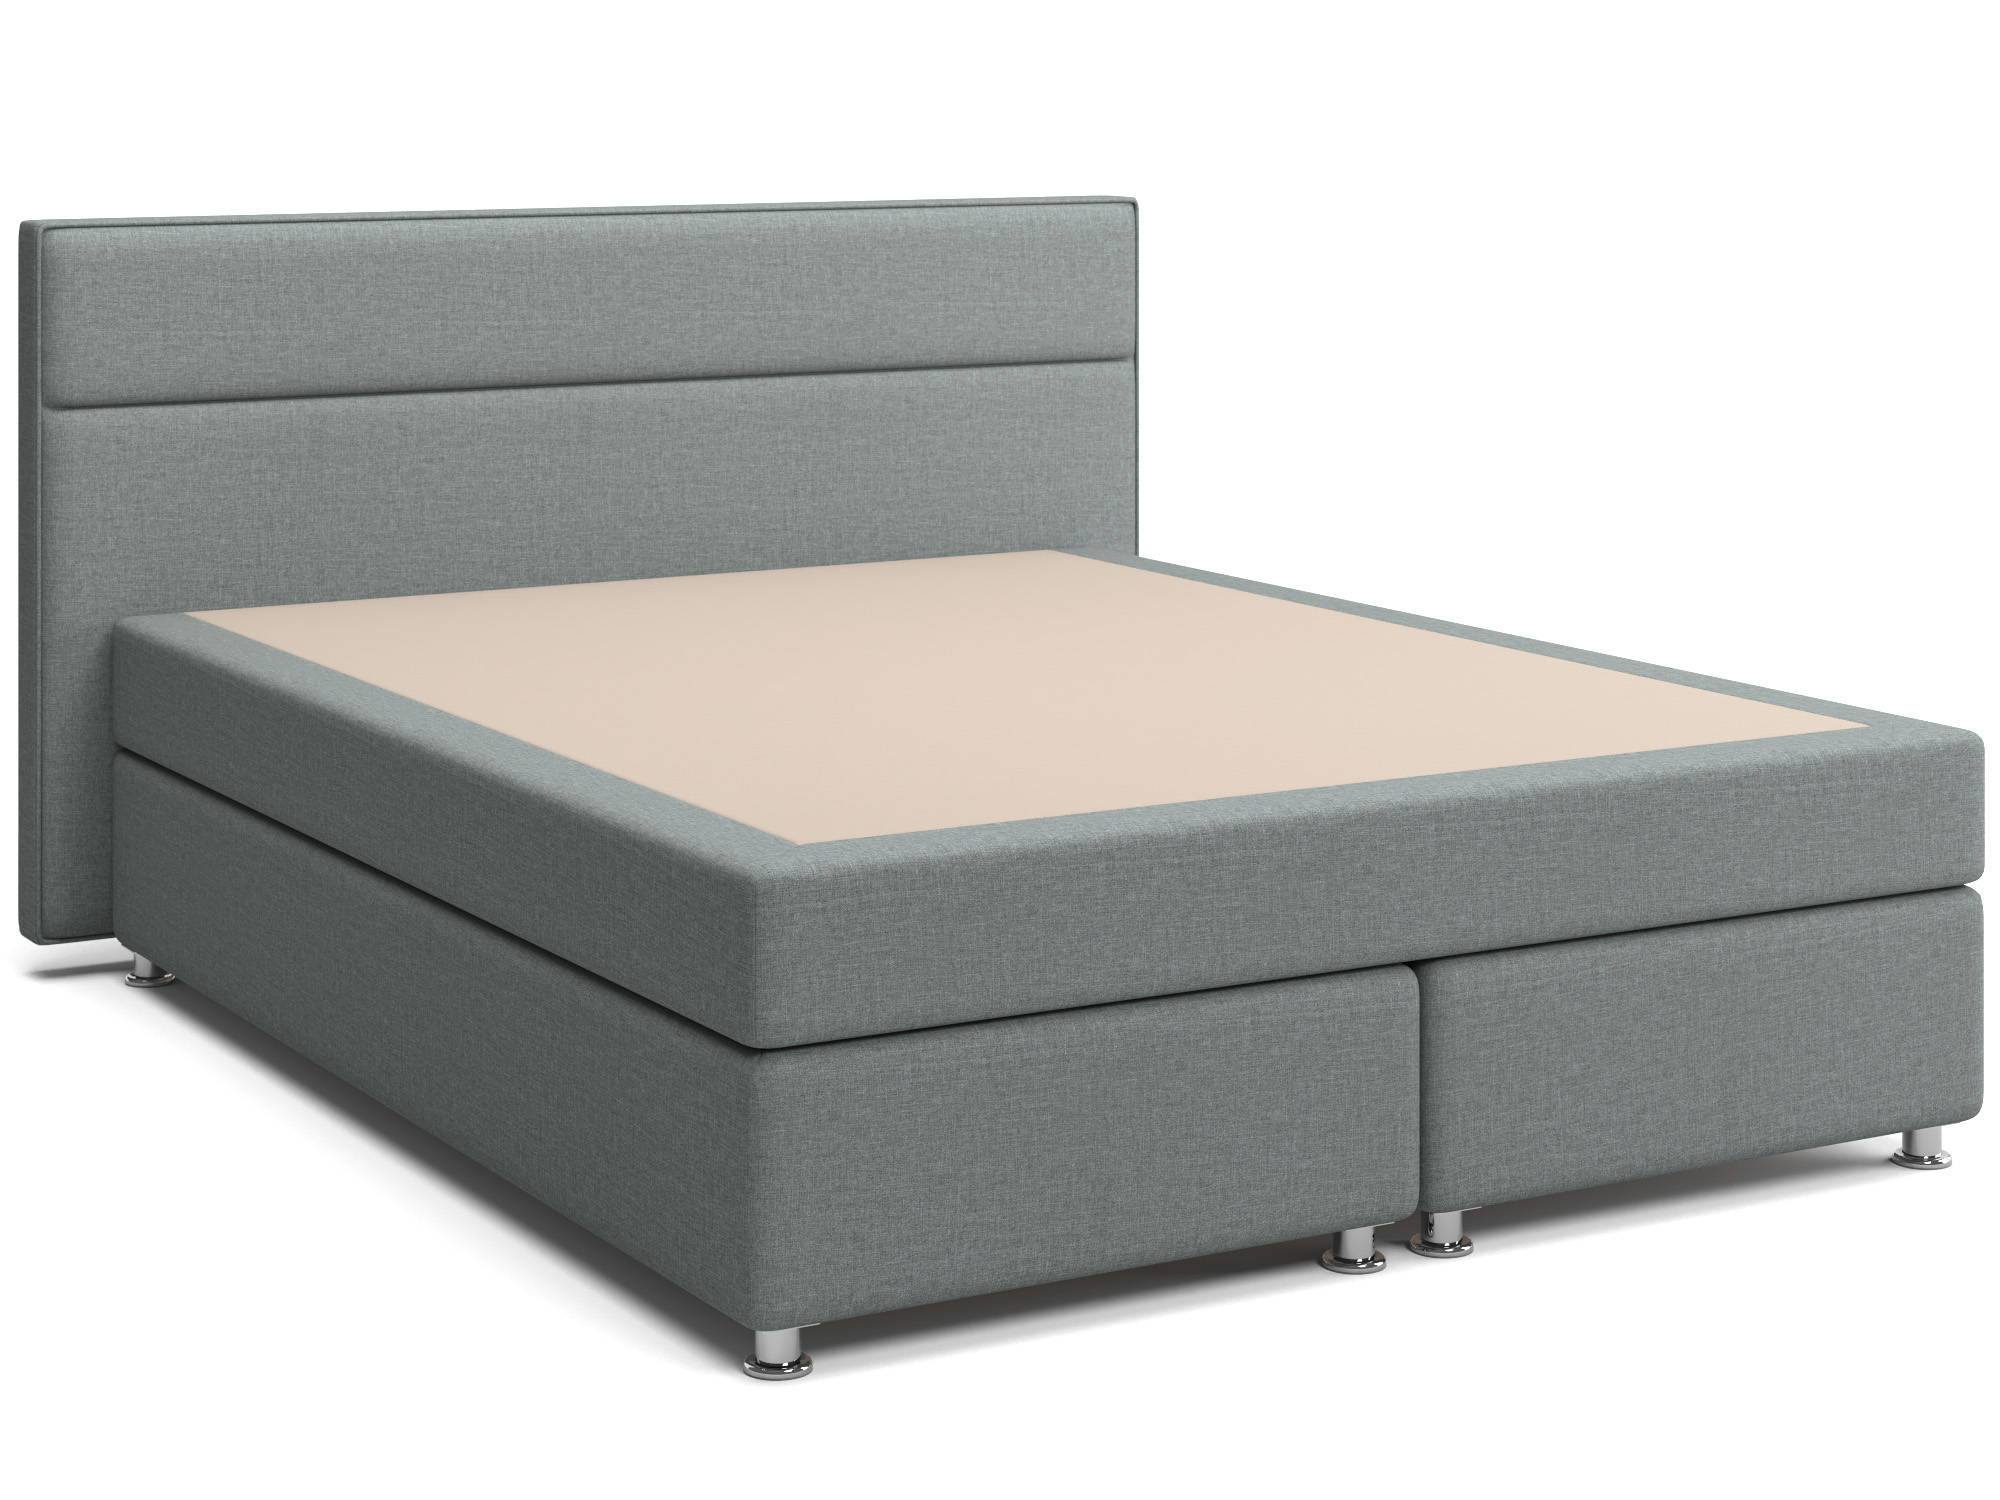 Кровать с матрасом и зависимым пружинным блоком Марта (160х200) Box Spring ДСП, ДВП кровать с матрасом граф 160х192 шоколадный дсп брус сосны